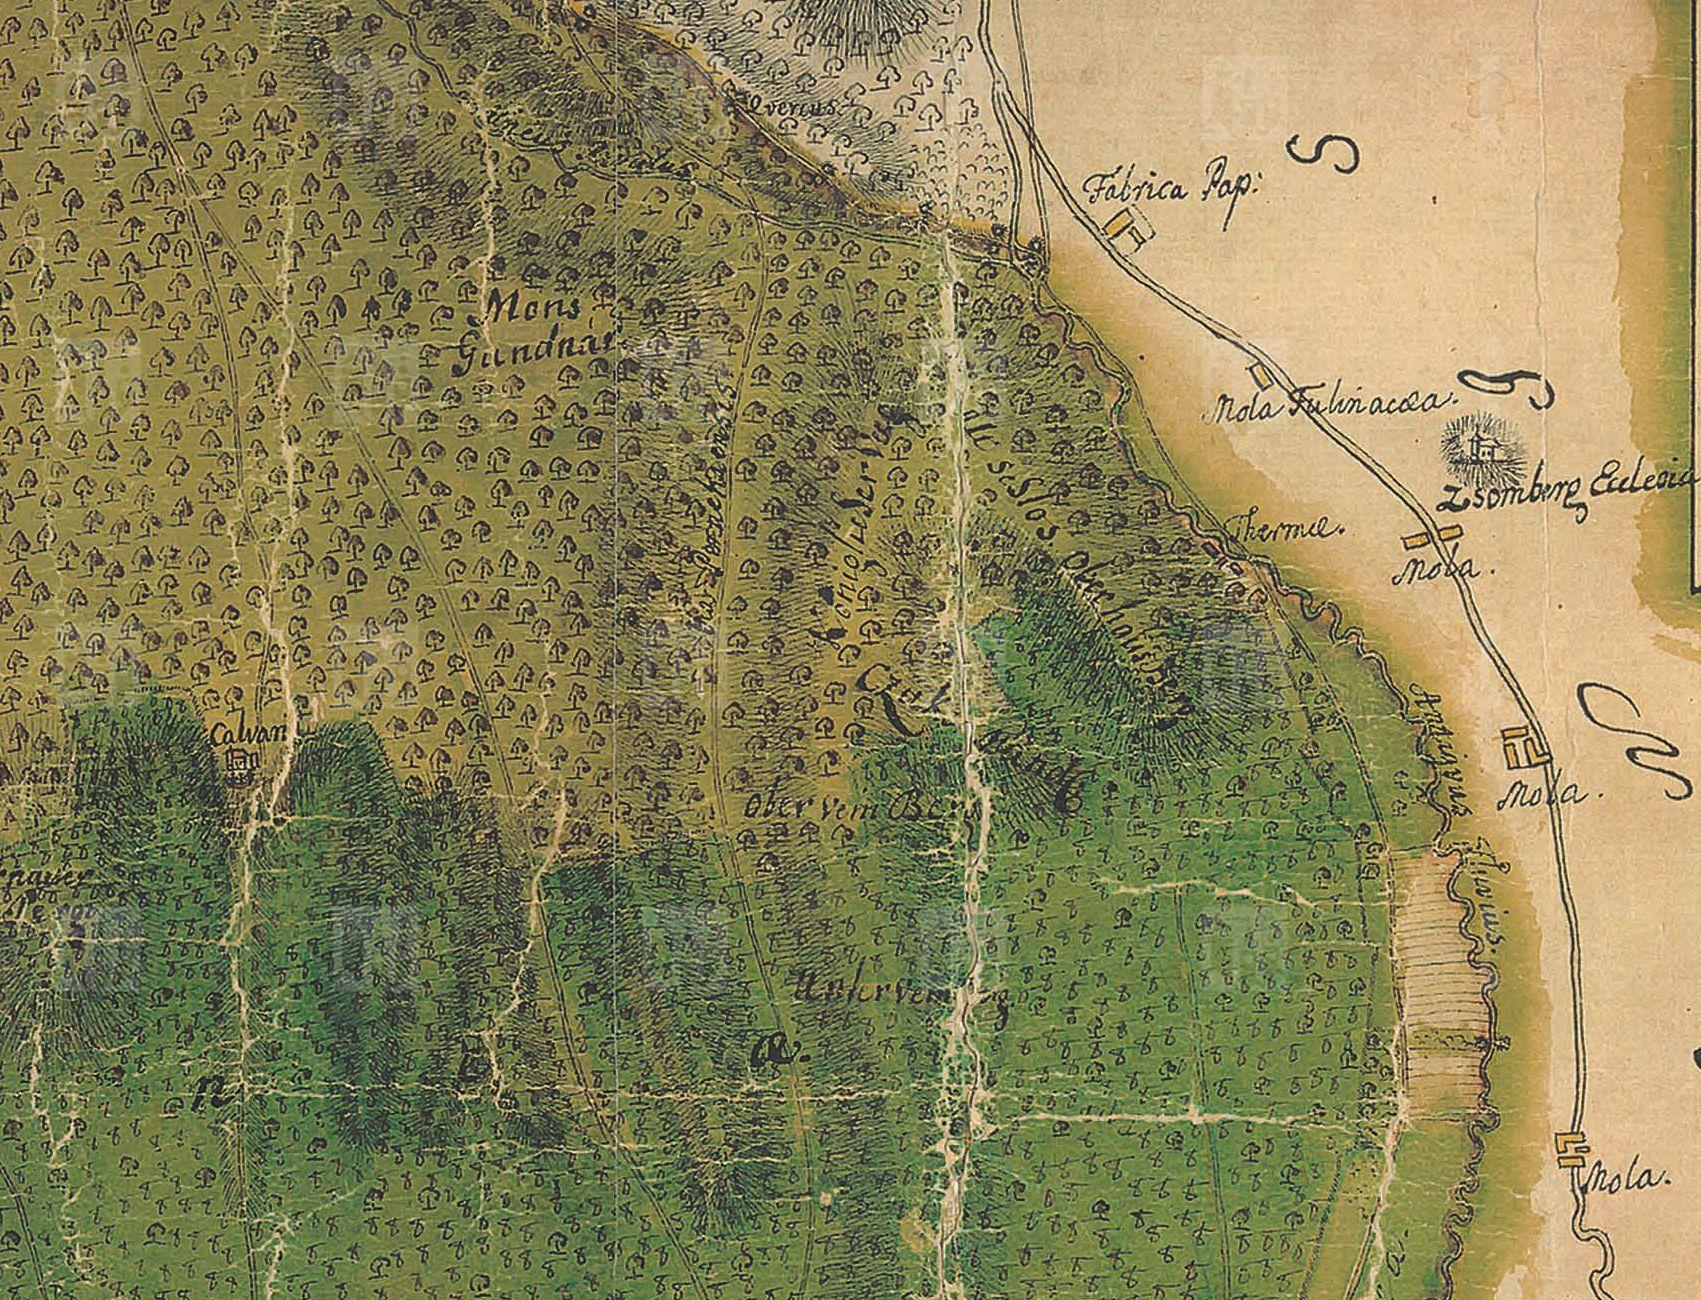 Gróf Ján nechal v blízkosti dôležitého banského náleziska (Sumberg) postavať hrádok (Starý zámok I - Alt Schloss), ktorý mal slúžiť na kontrolu miestnych baní. Mapa z roku 1767